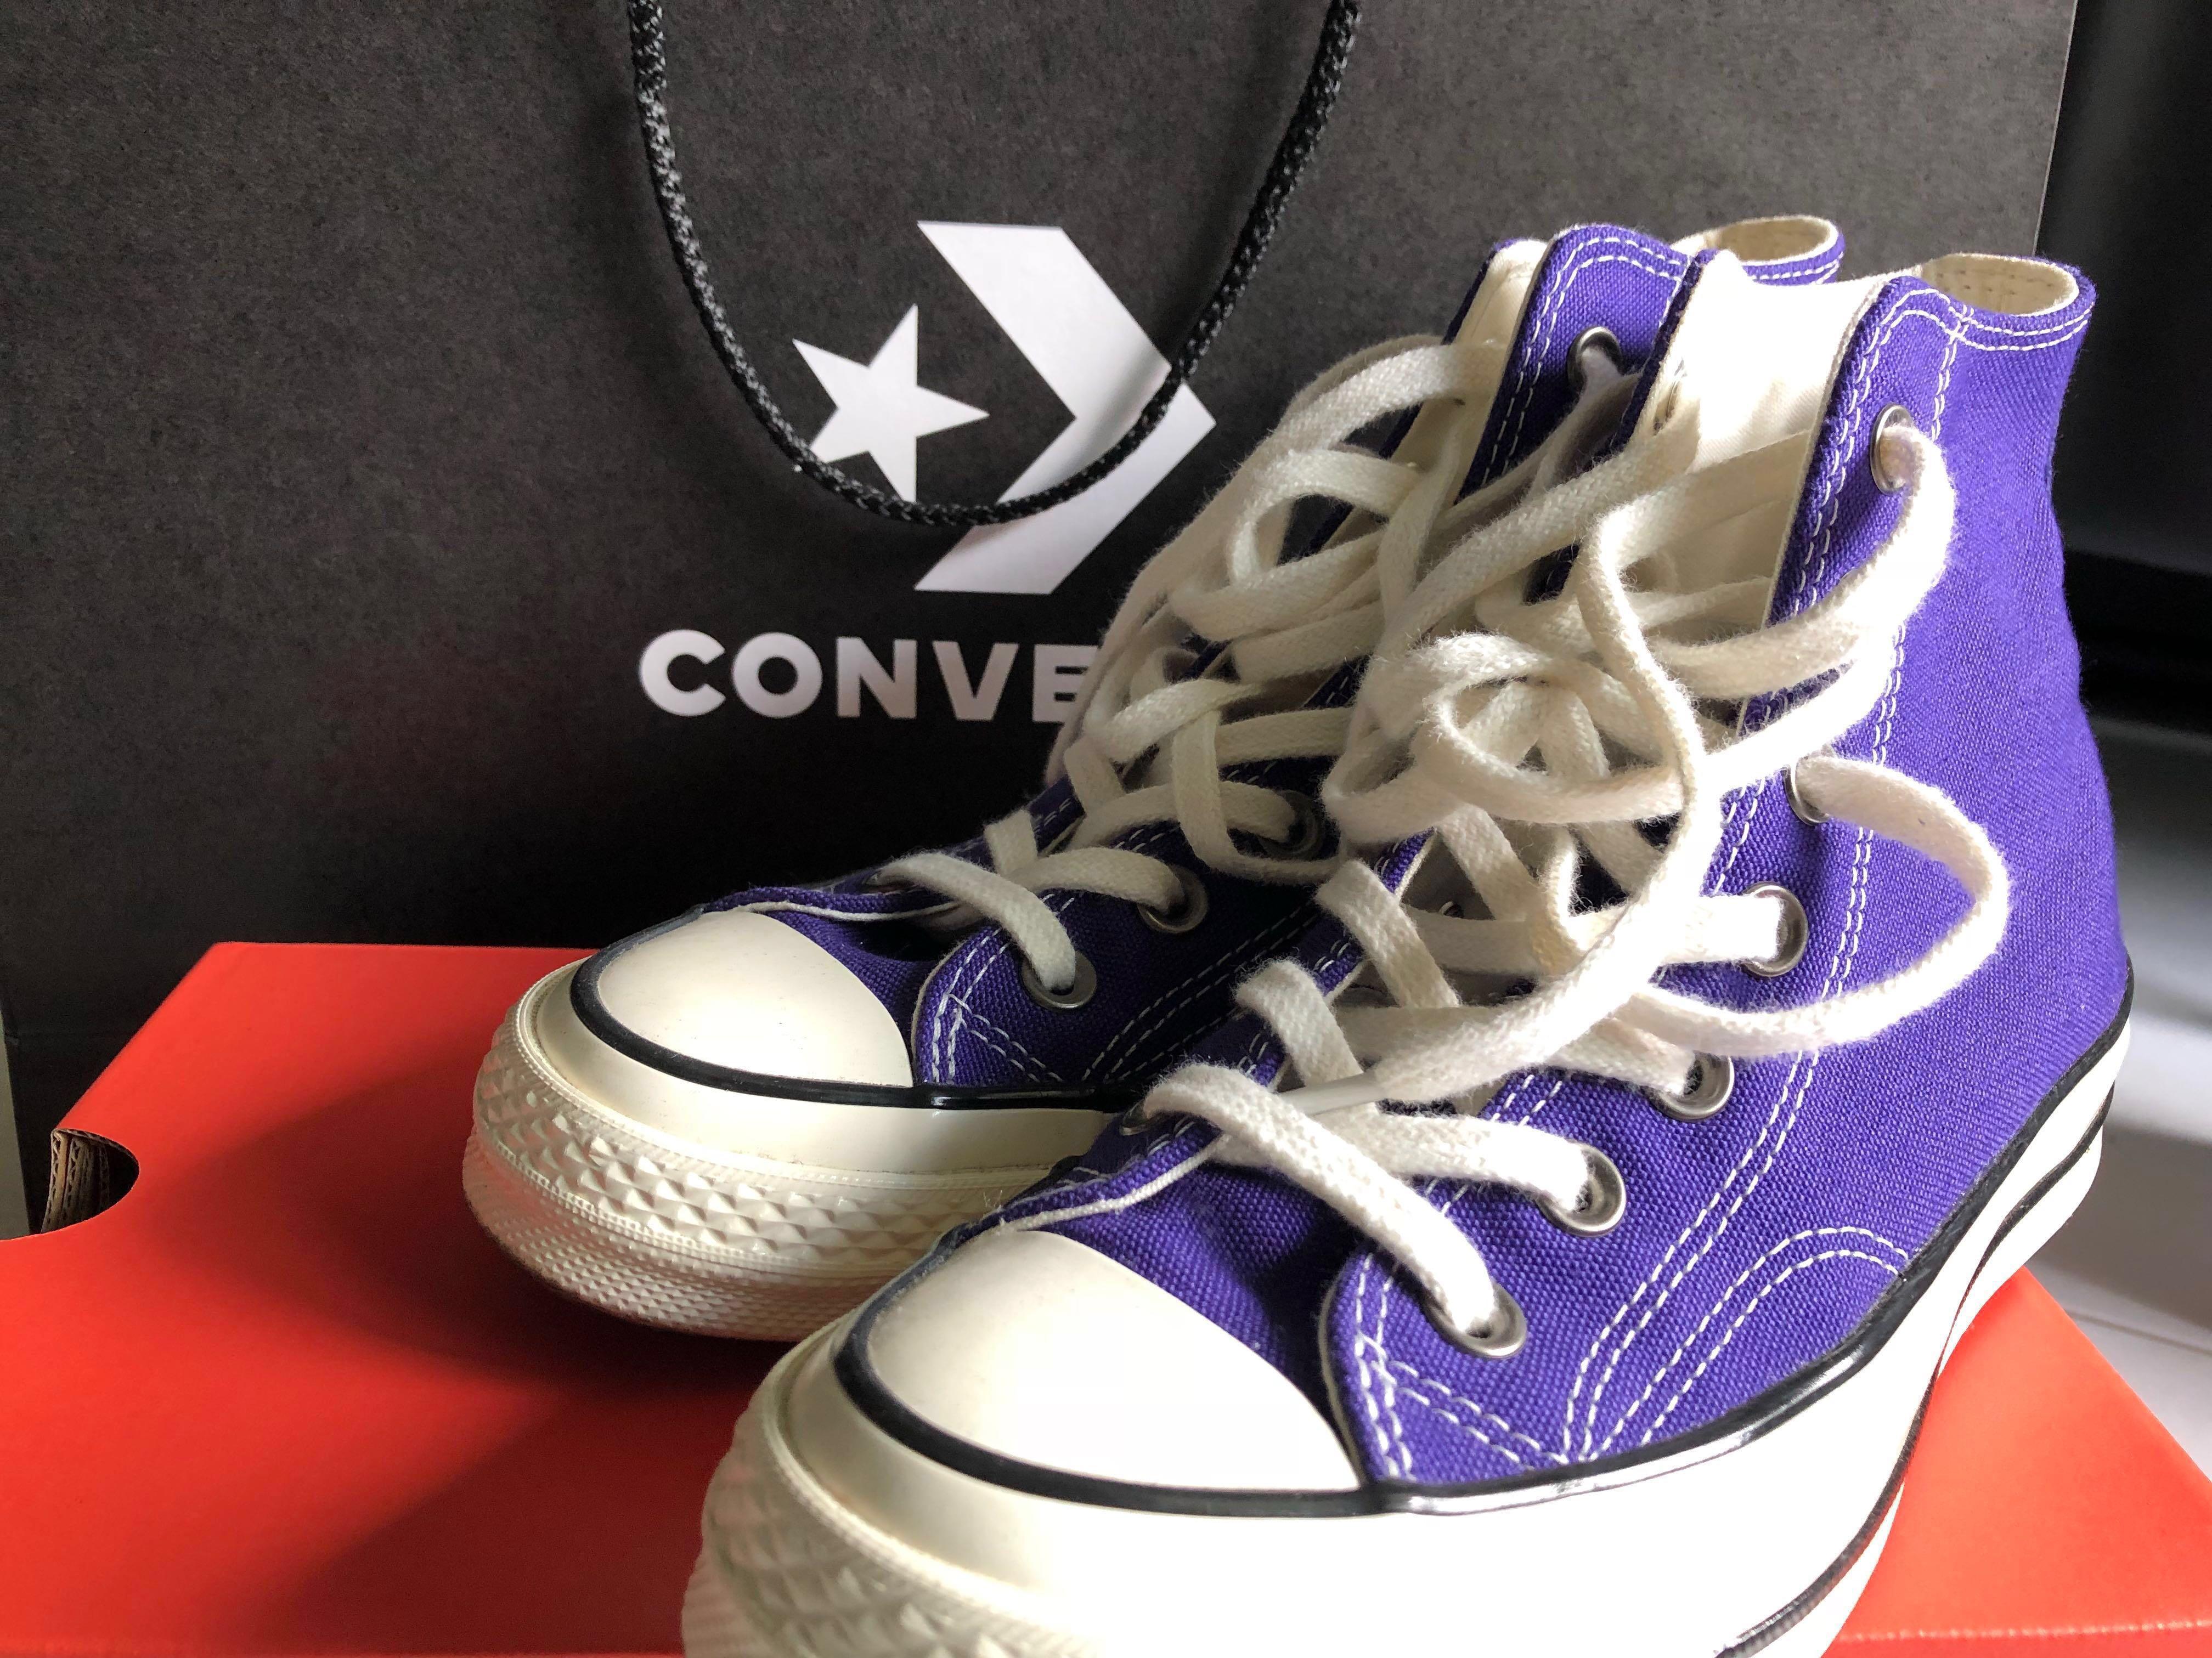 find converse